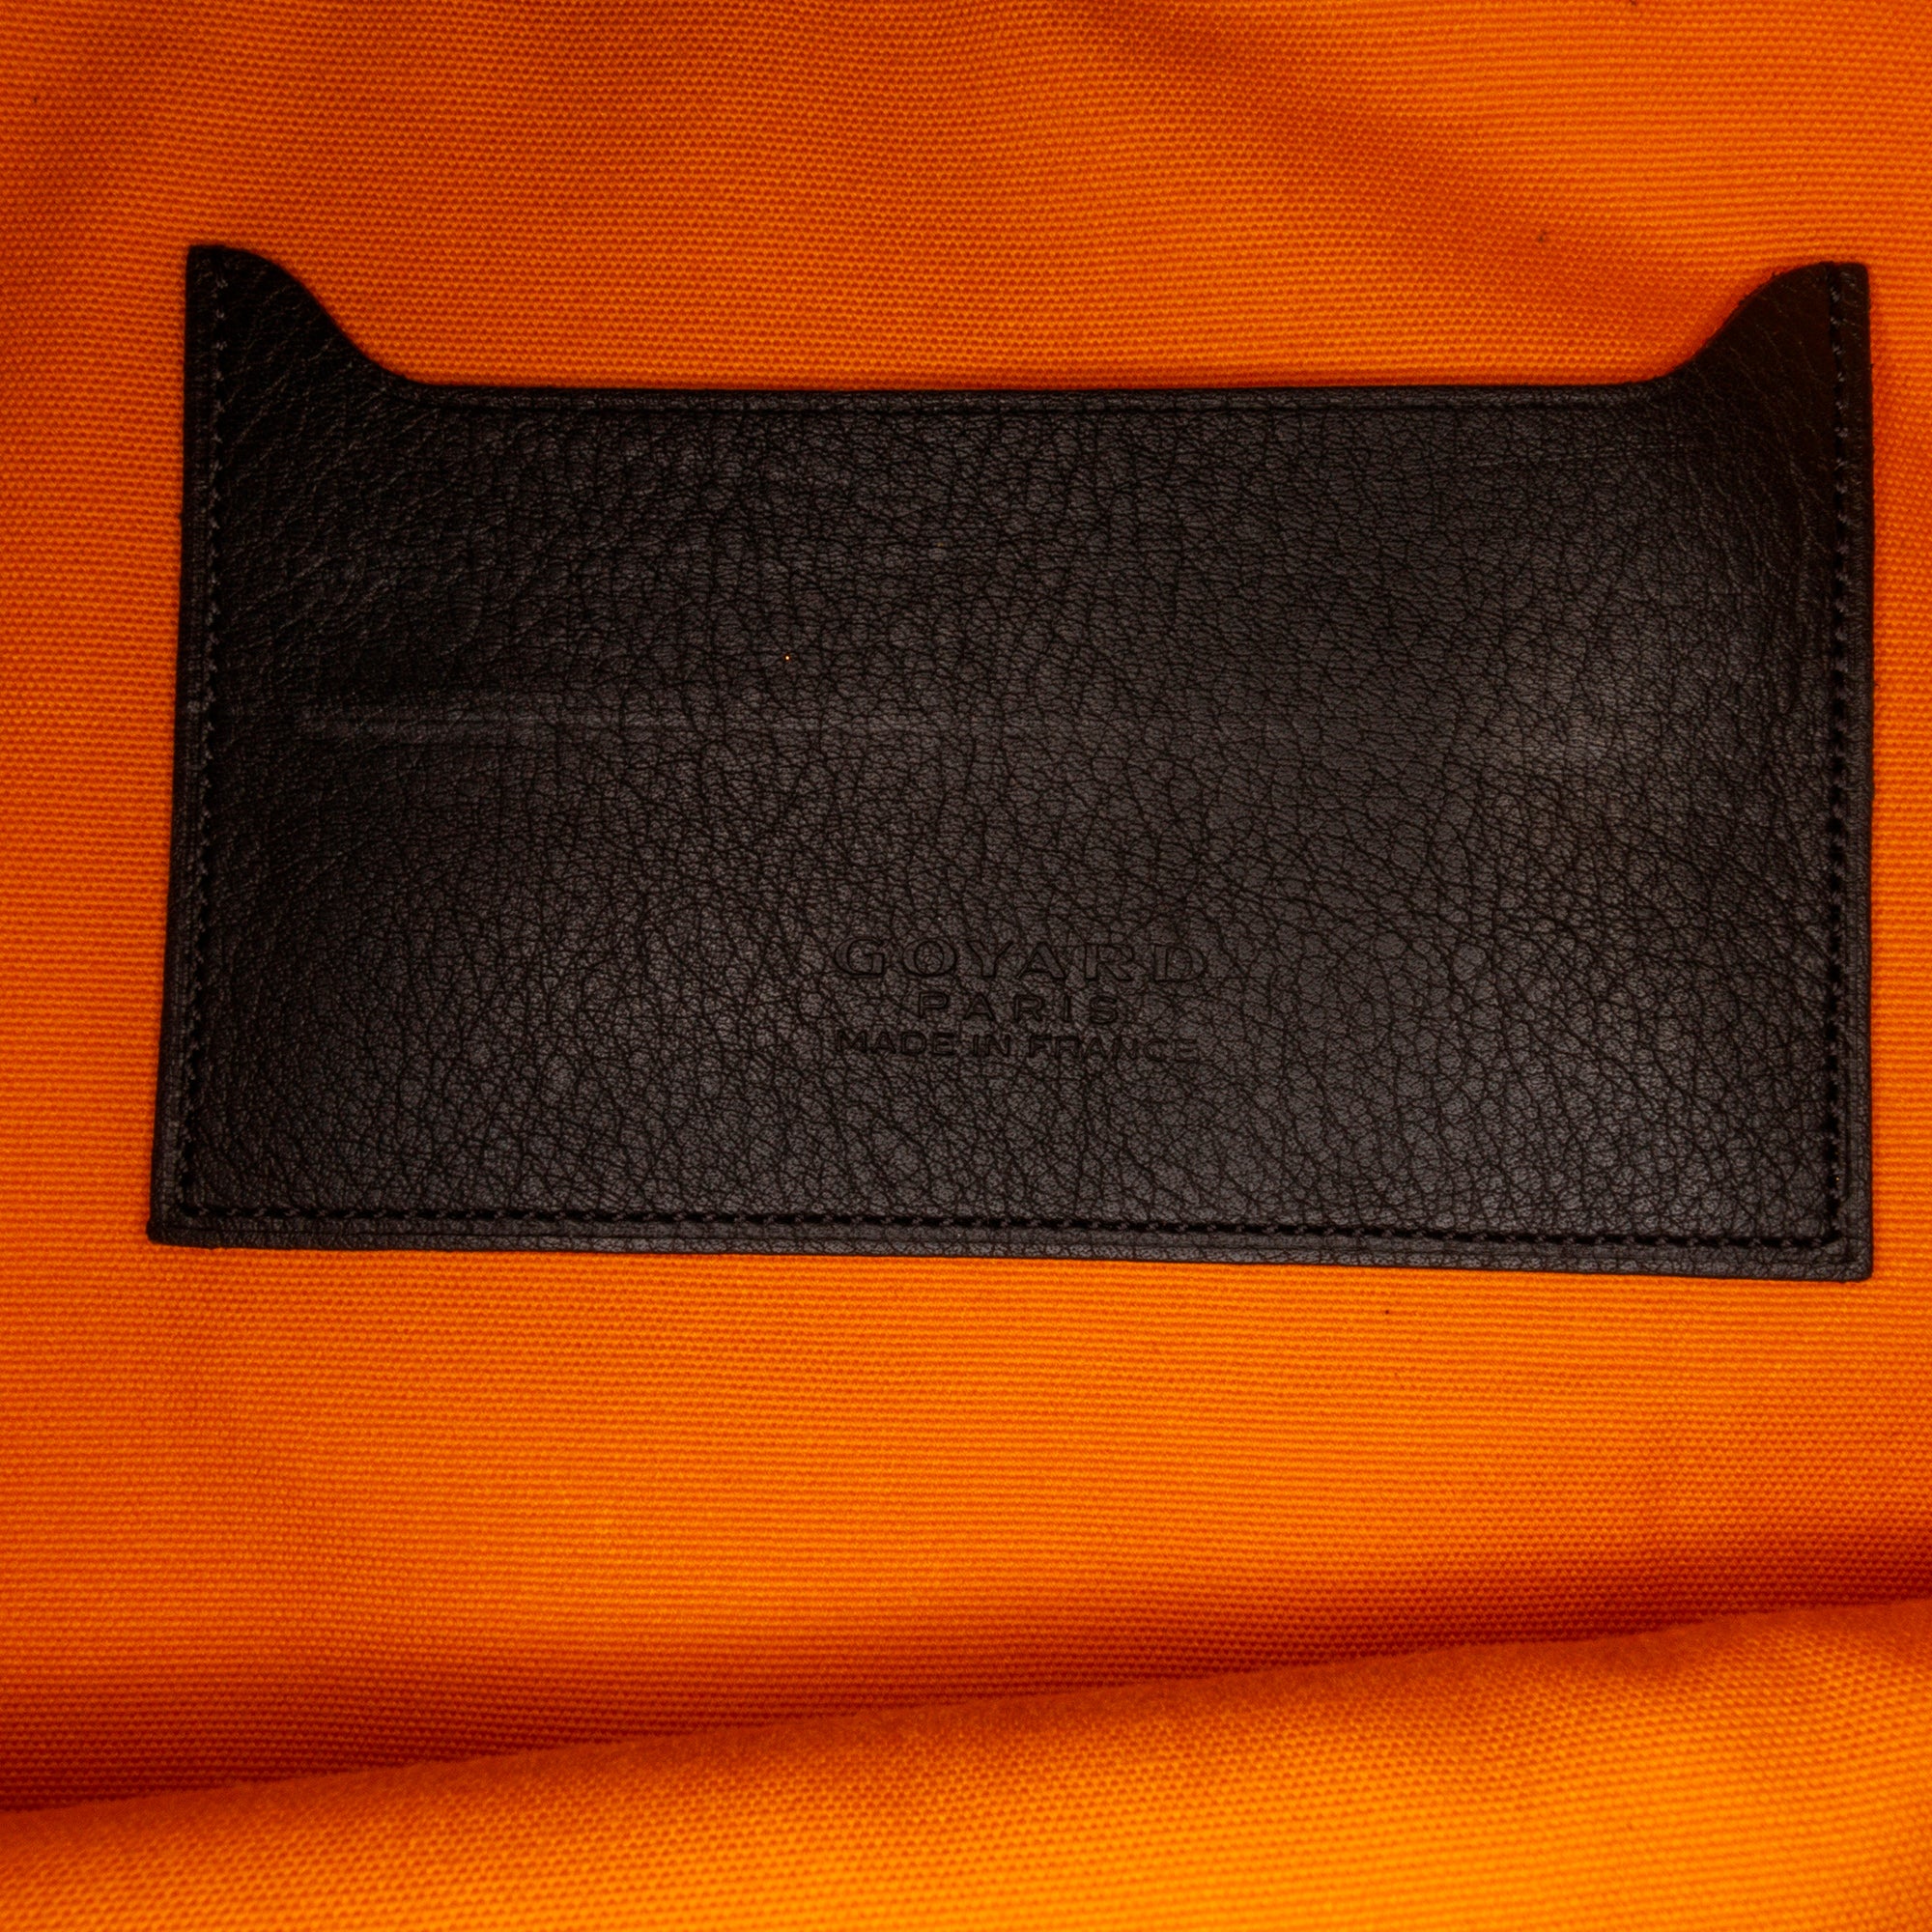 Goyard Senat large pouch in black color